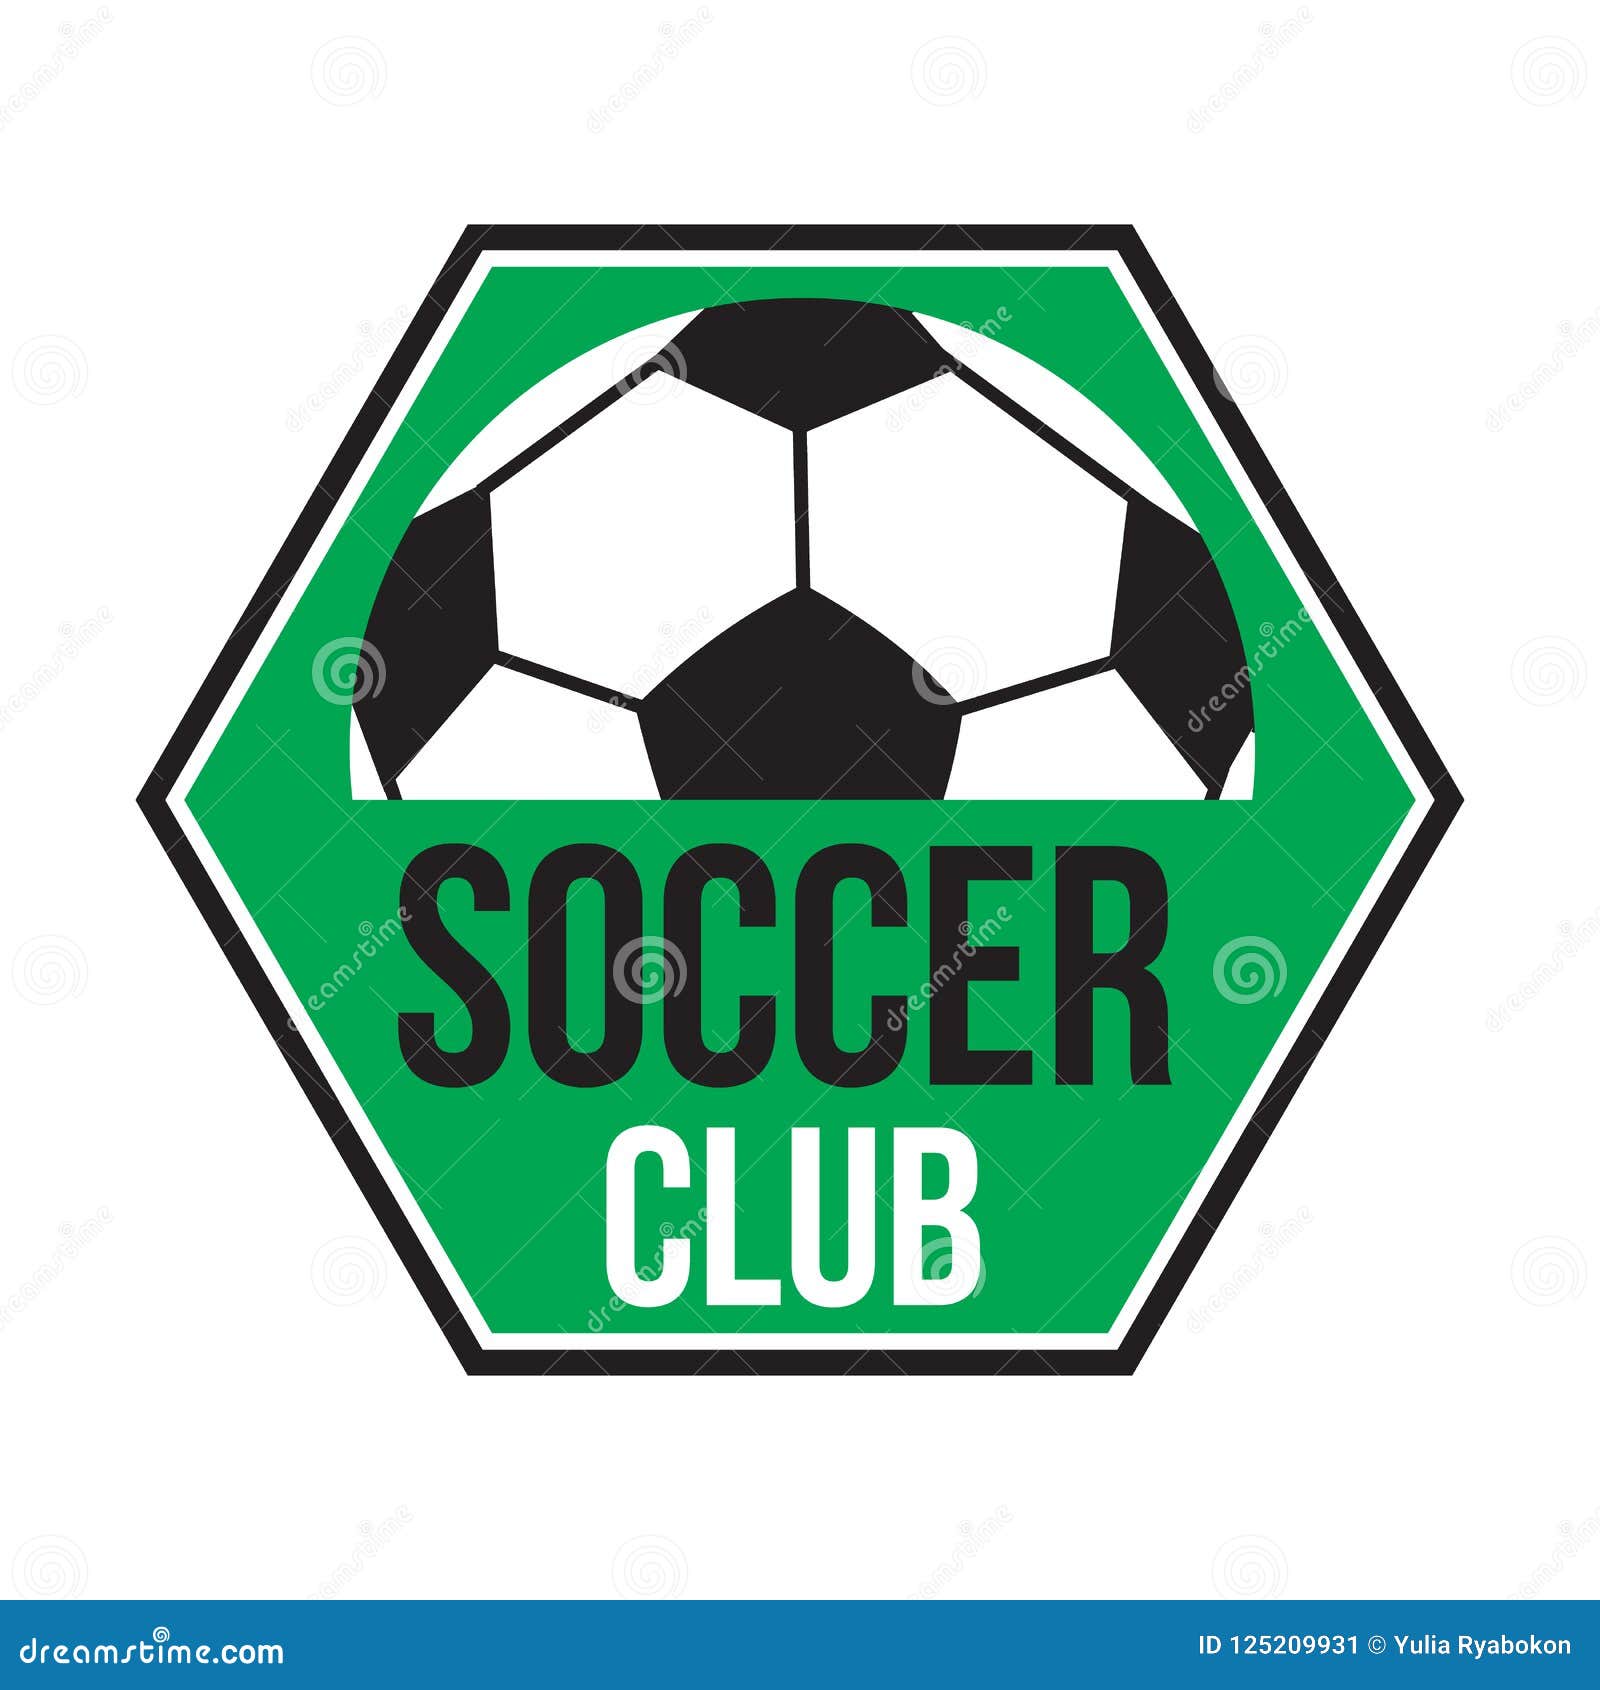 Soccer club logo stock illustration. Illustration of football - 125209931